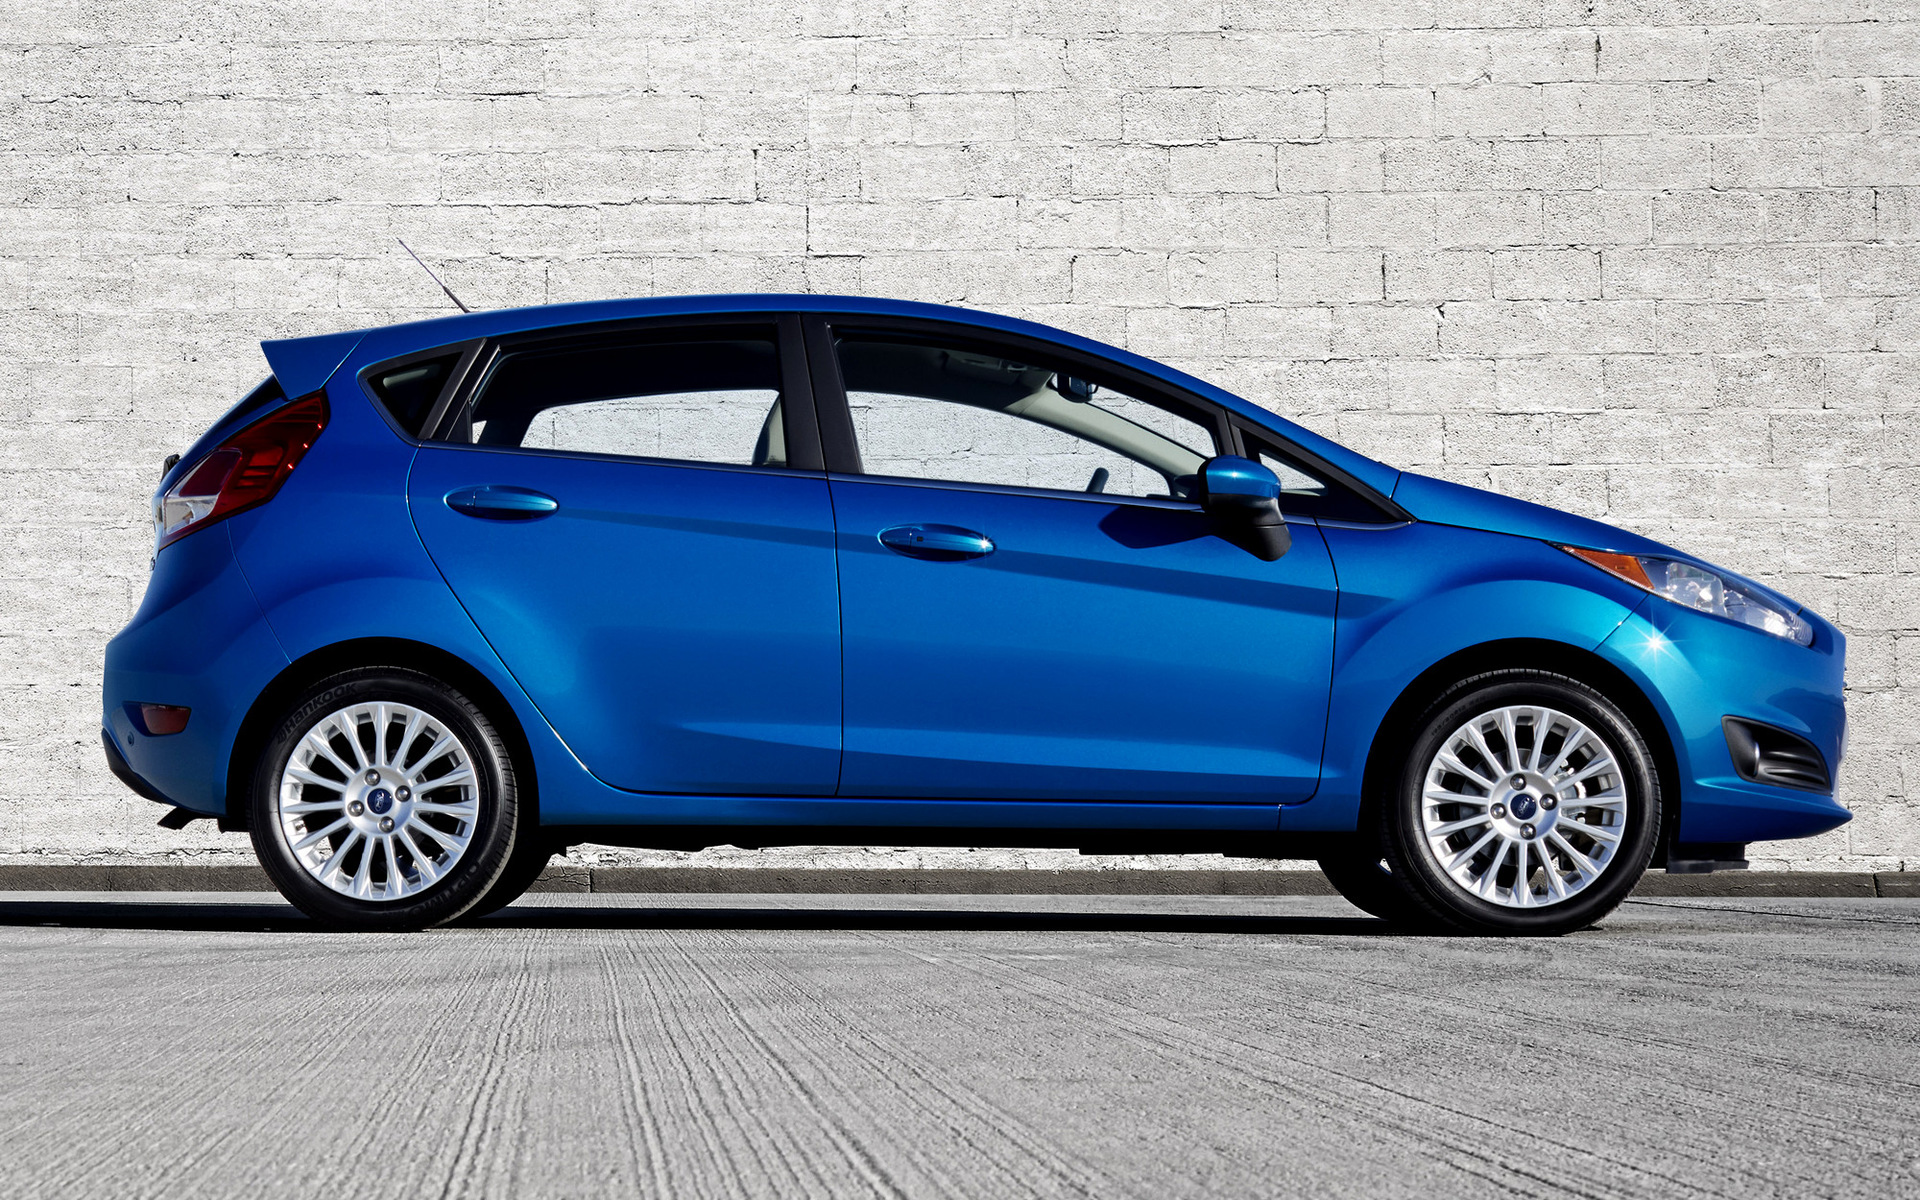 Ford Fiesta 2015 › Фото в новом кузове + фото салона...